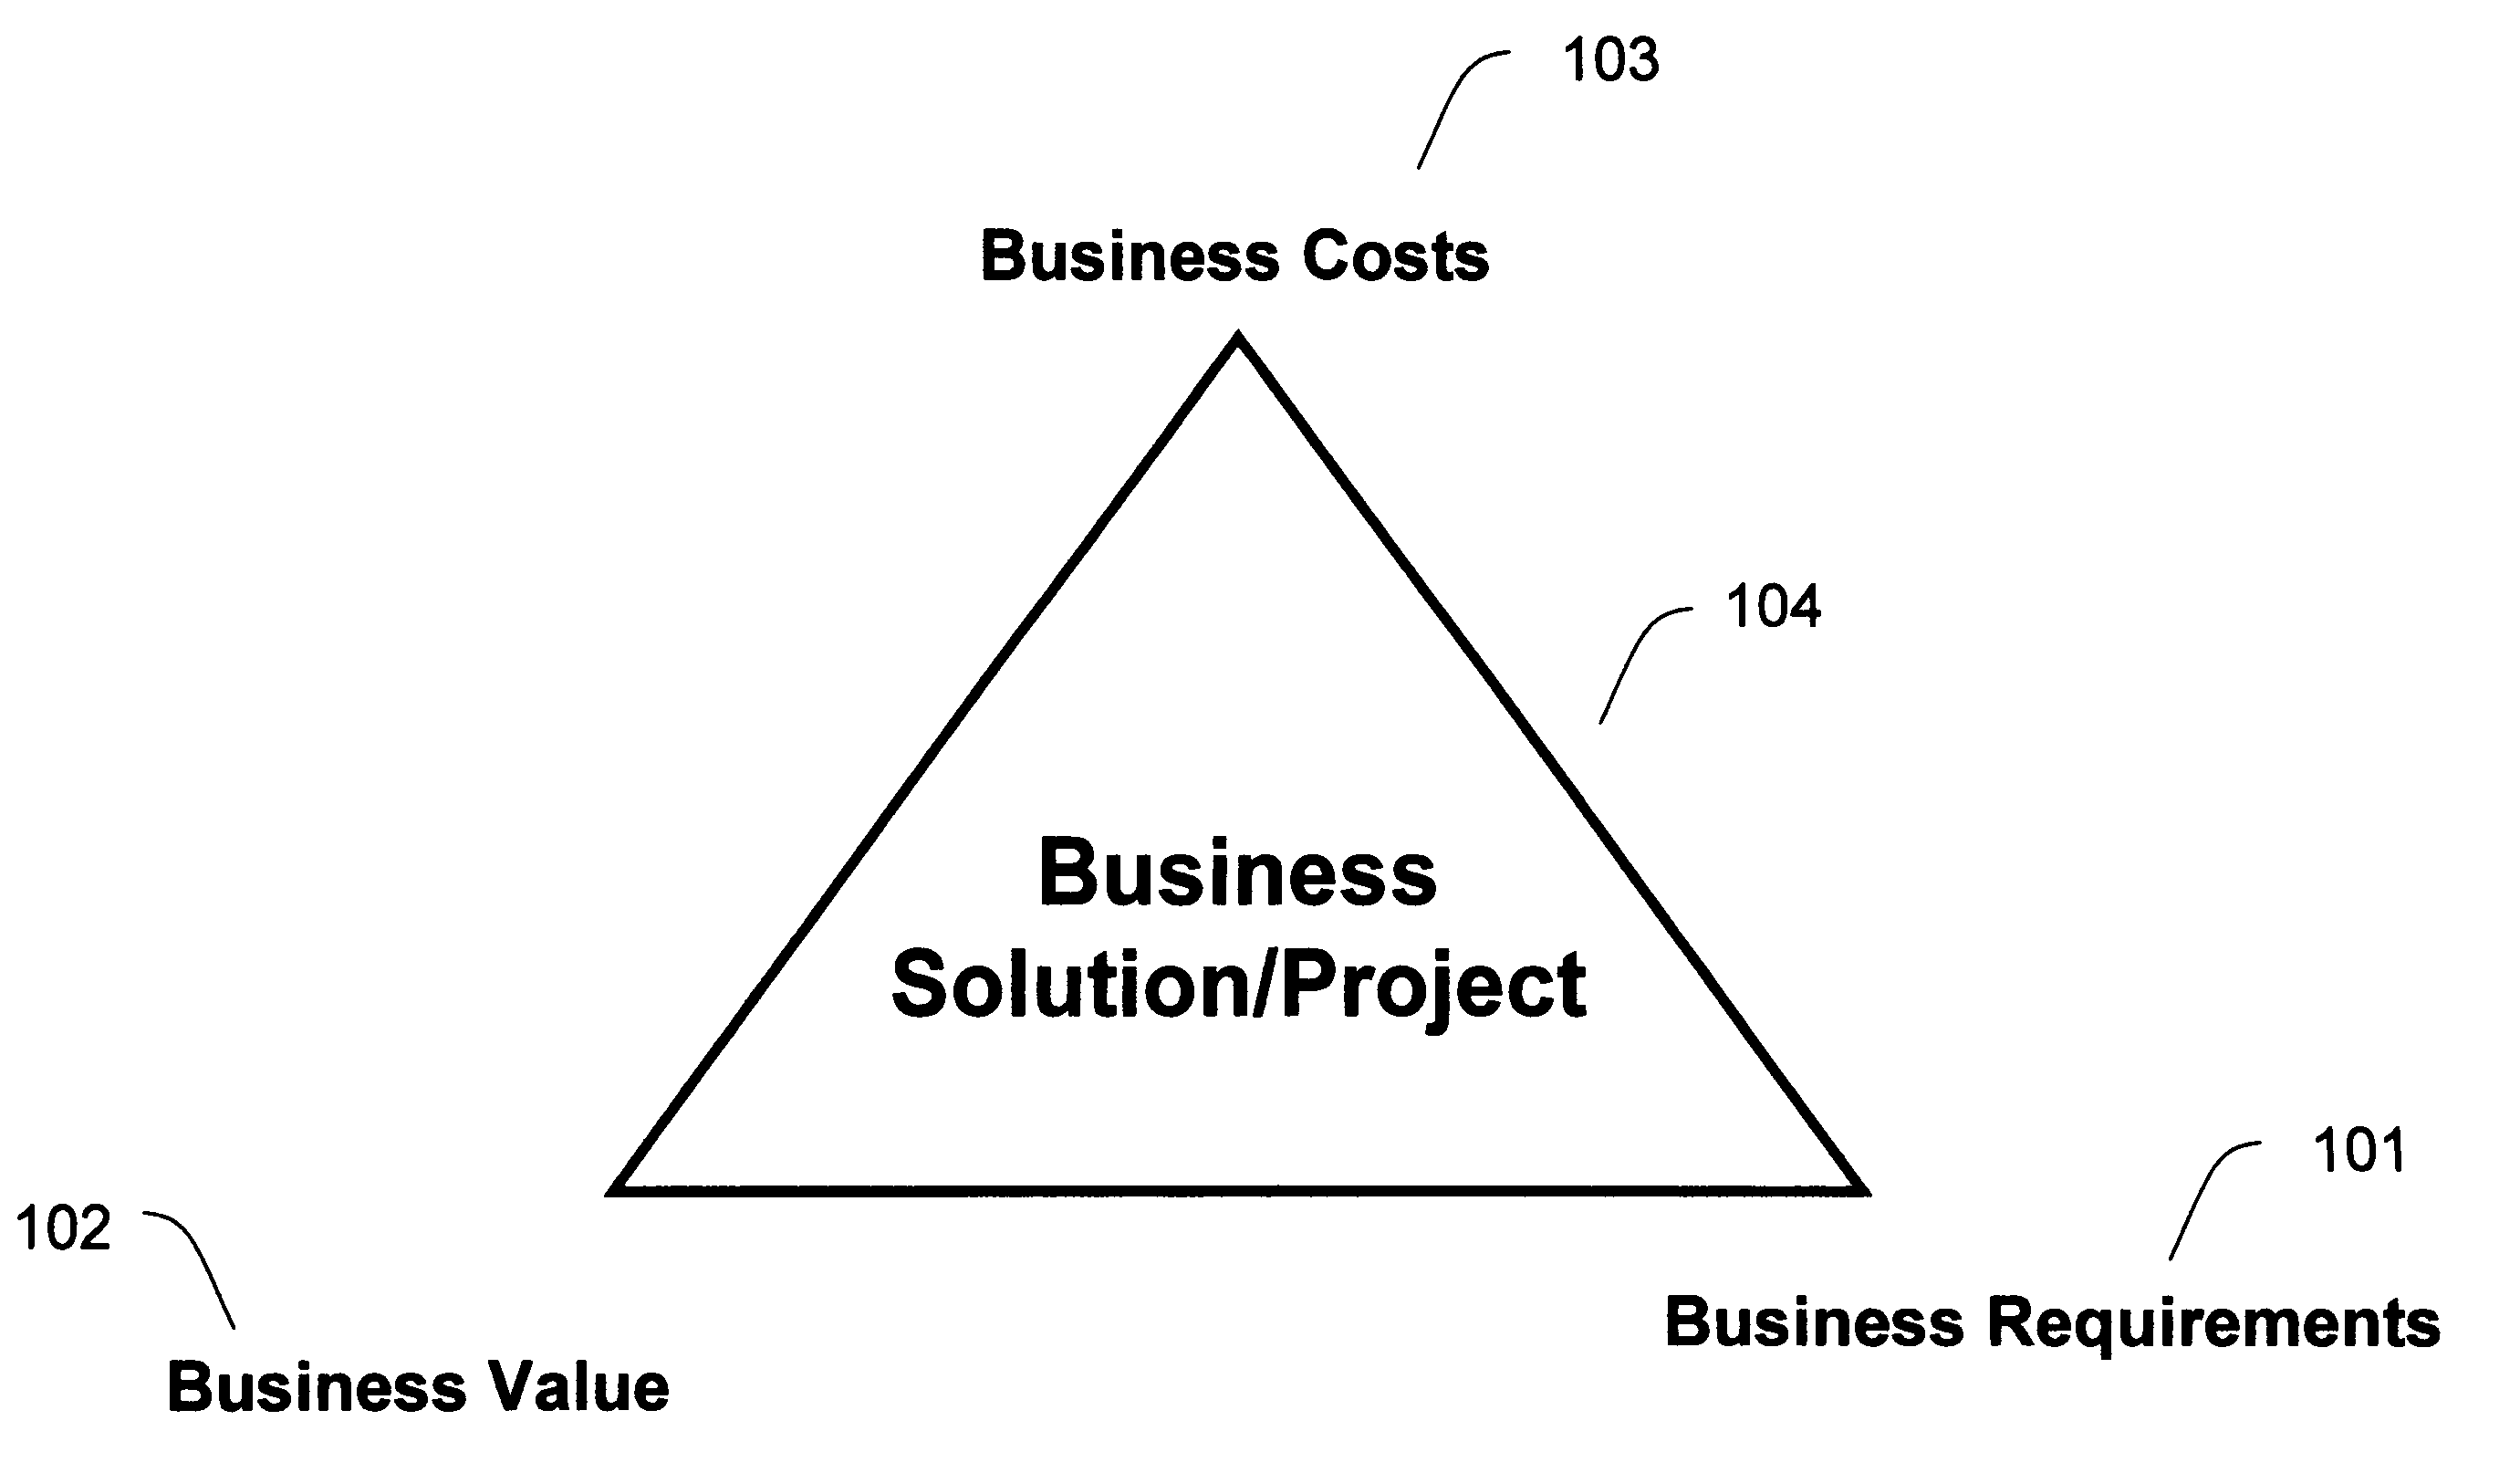 Method and system for enterprise portfolio management based on component business model